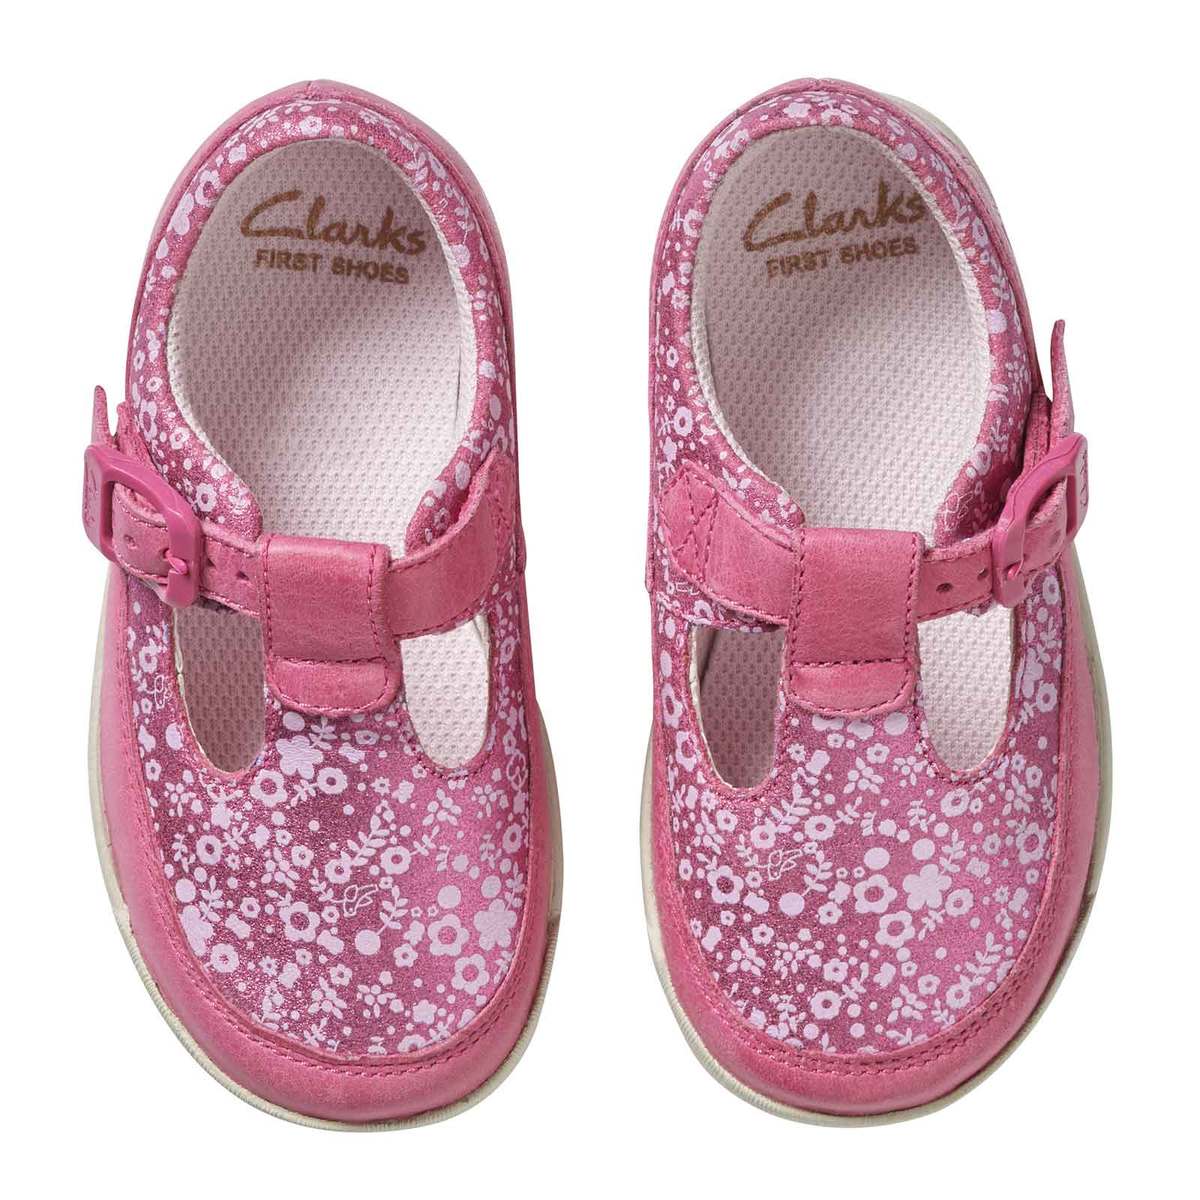 clarks children's shoes vouchers